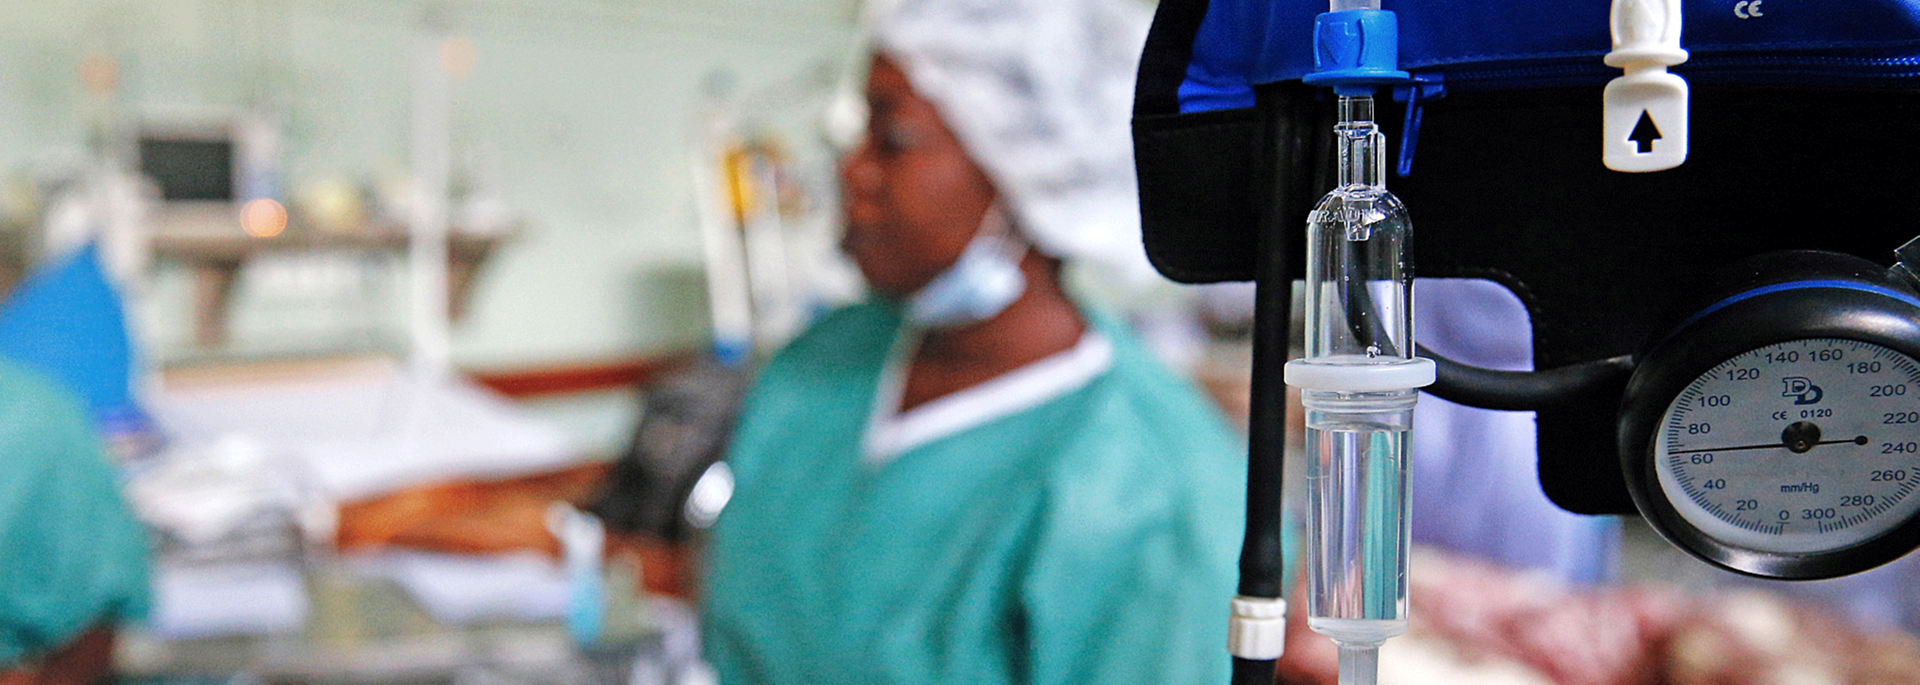 Innenaufnahme eines Krankenhauses in Afrika. Im Vordergrund ein Infusionsbeutel und ein Messgerät, im Hintergrund eine Krankenschwester.